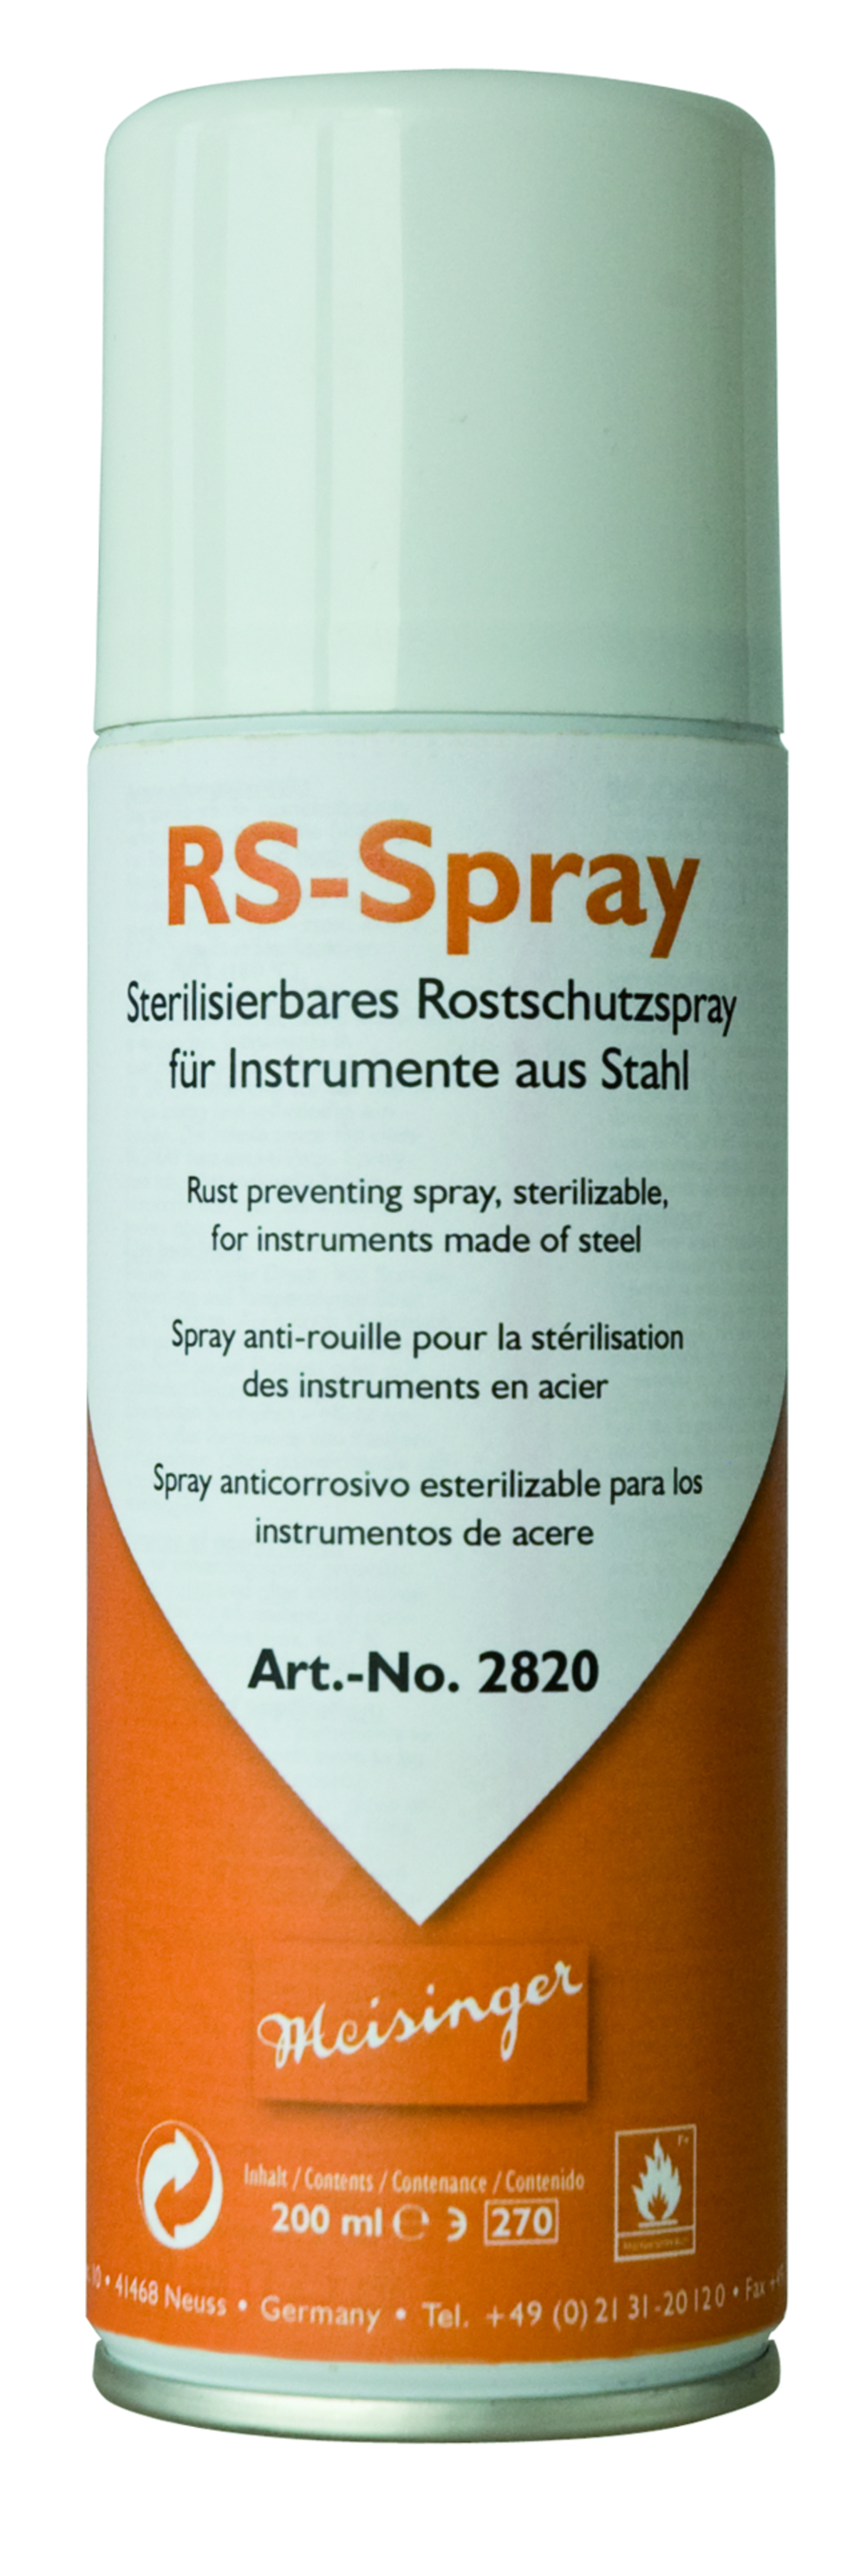 RS-Spray